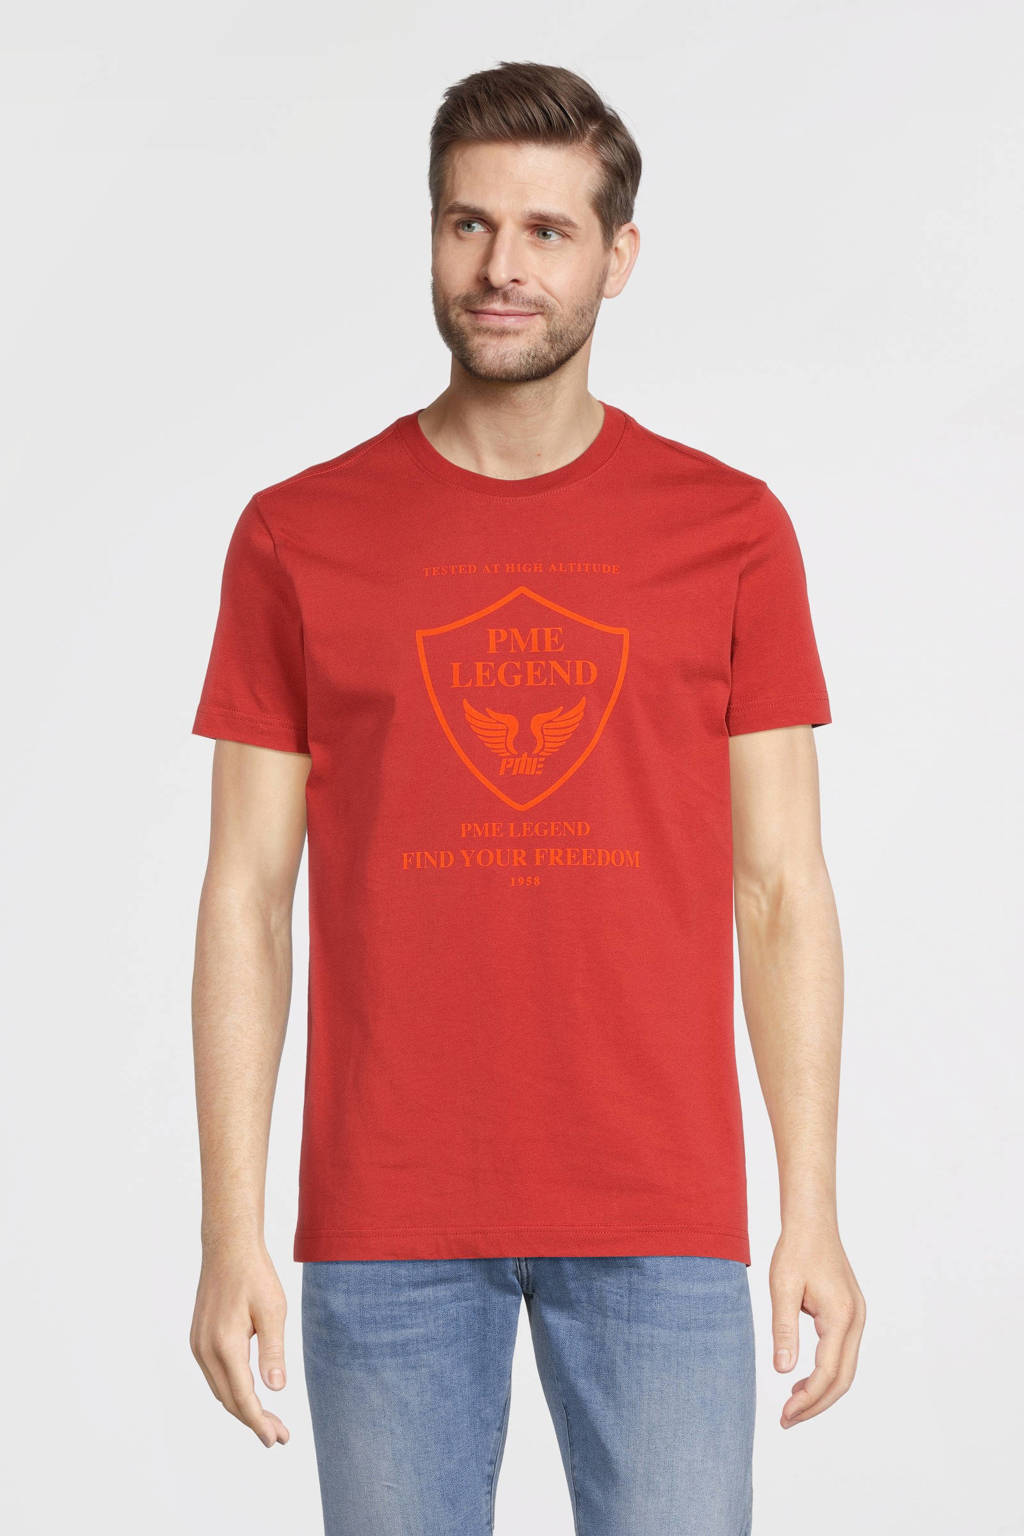 Geest Niet genoeg eenzaam PME Legend T-shirt met logo 1084 | wehkamp